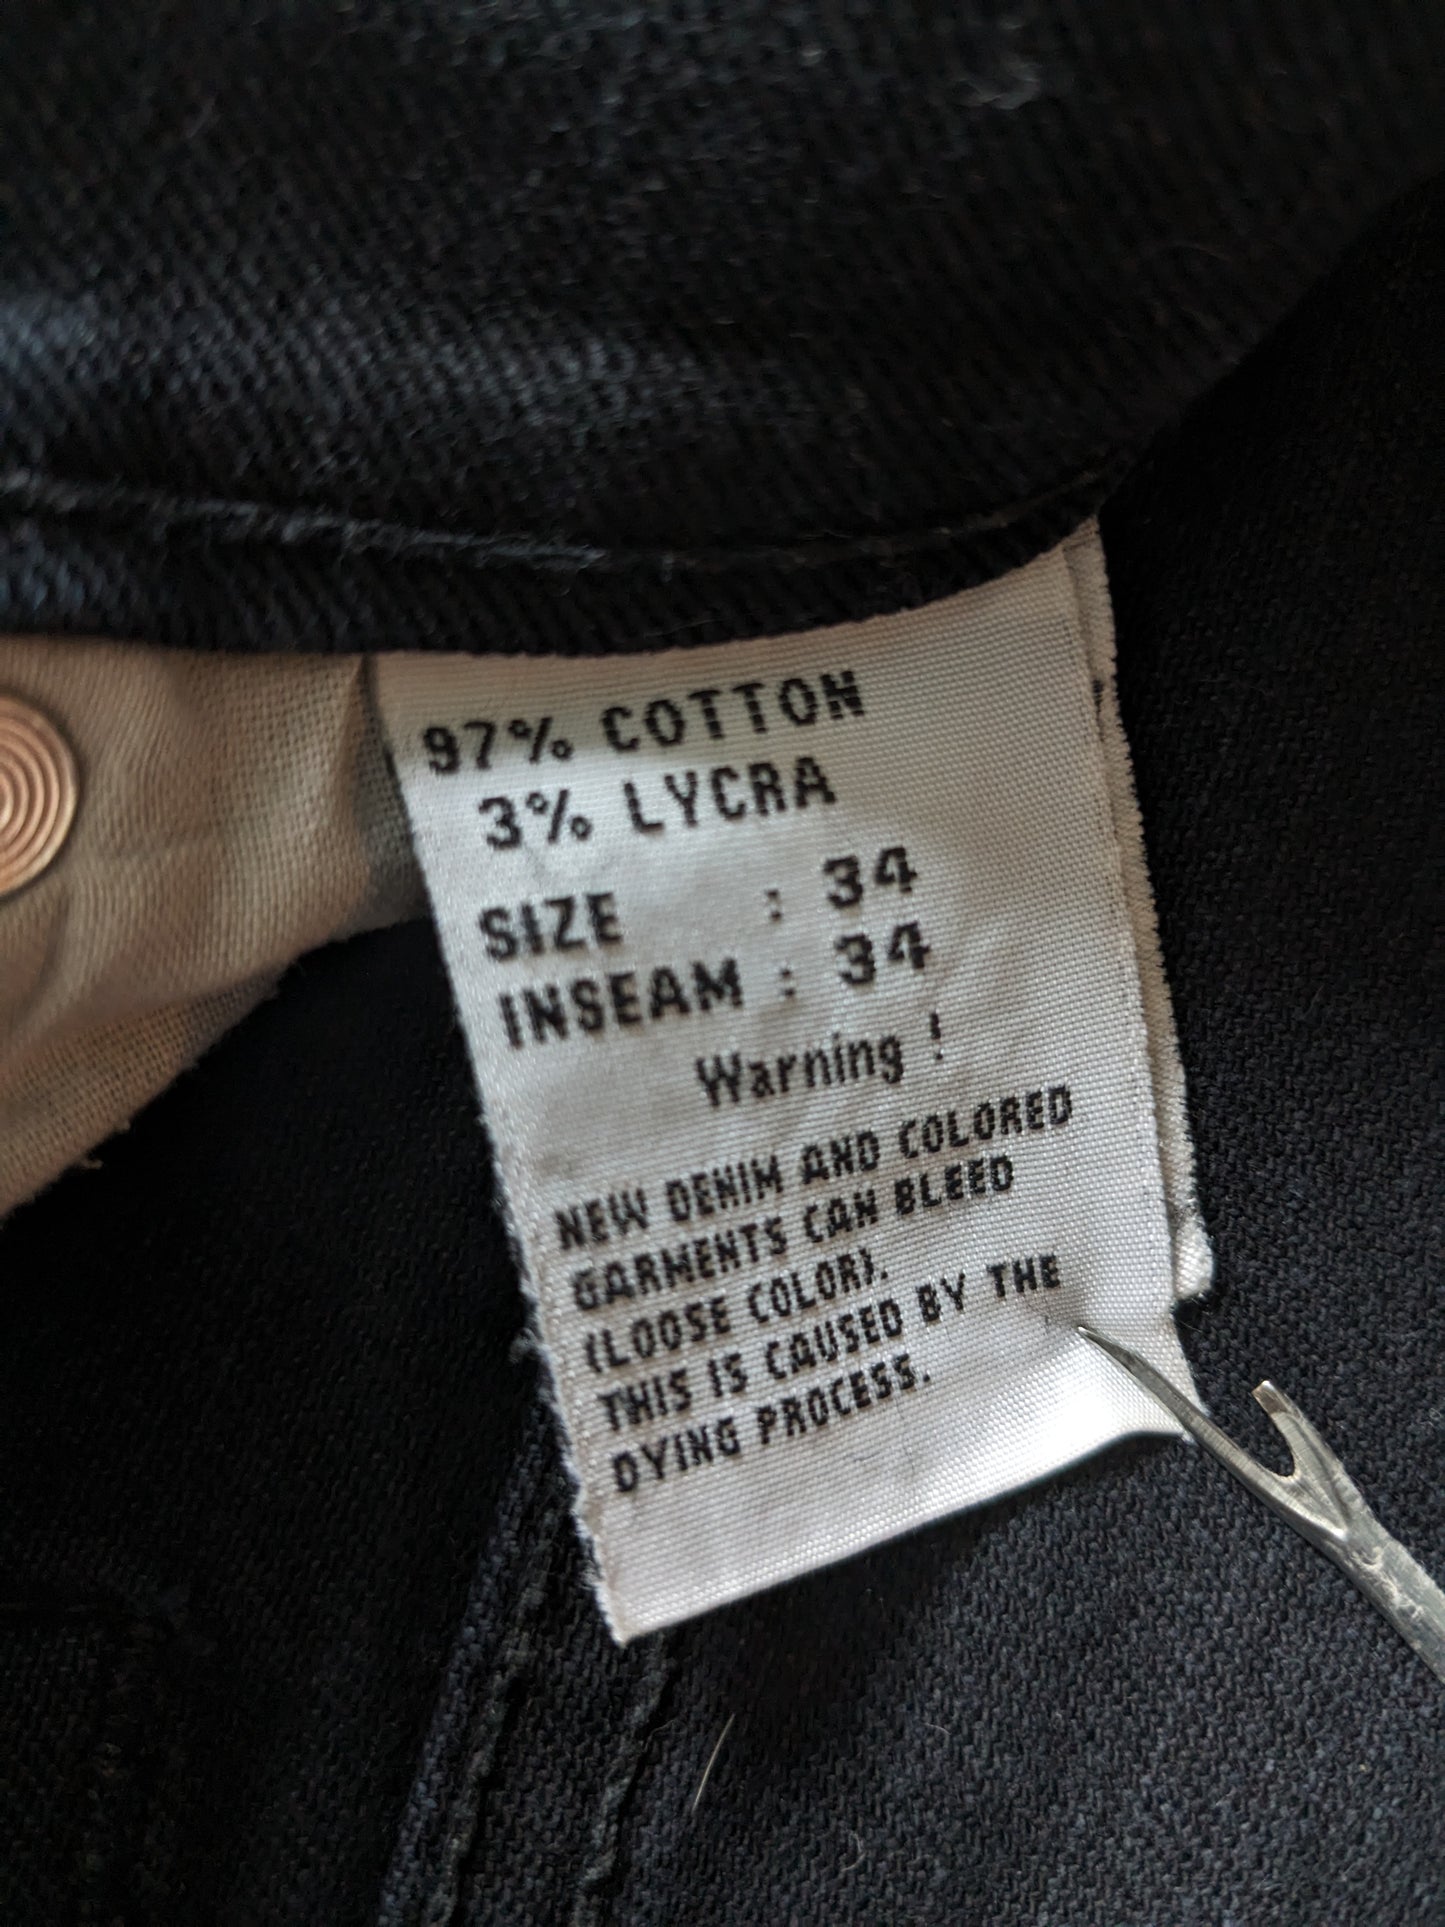 B Basic von Brams Paris Jeans. Schwarz gefärbt. Größe W34 - L34. Komfort fit. strecken.